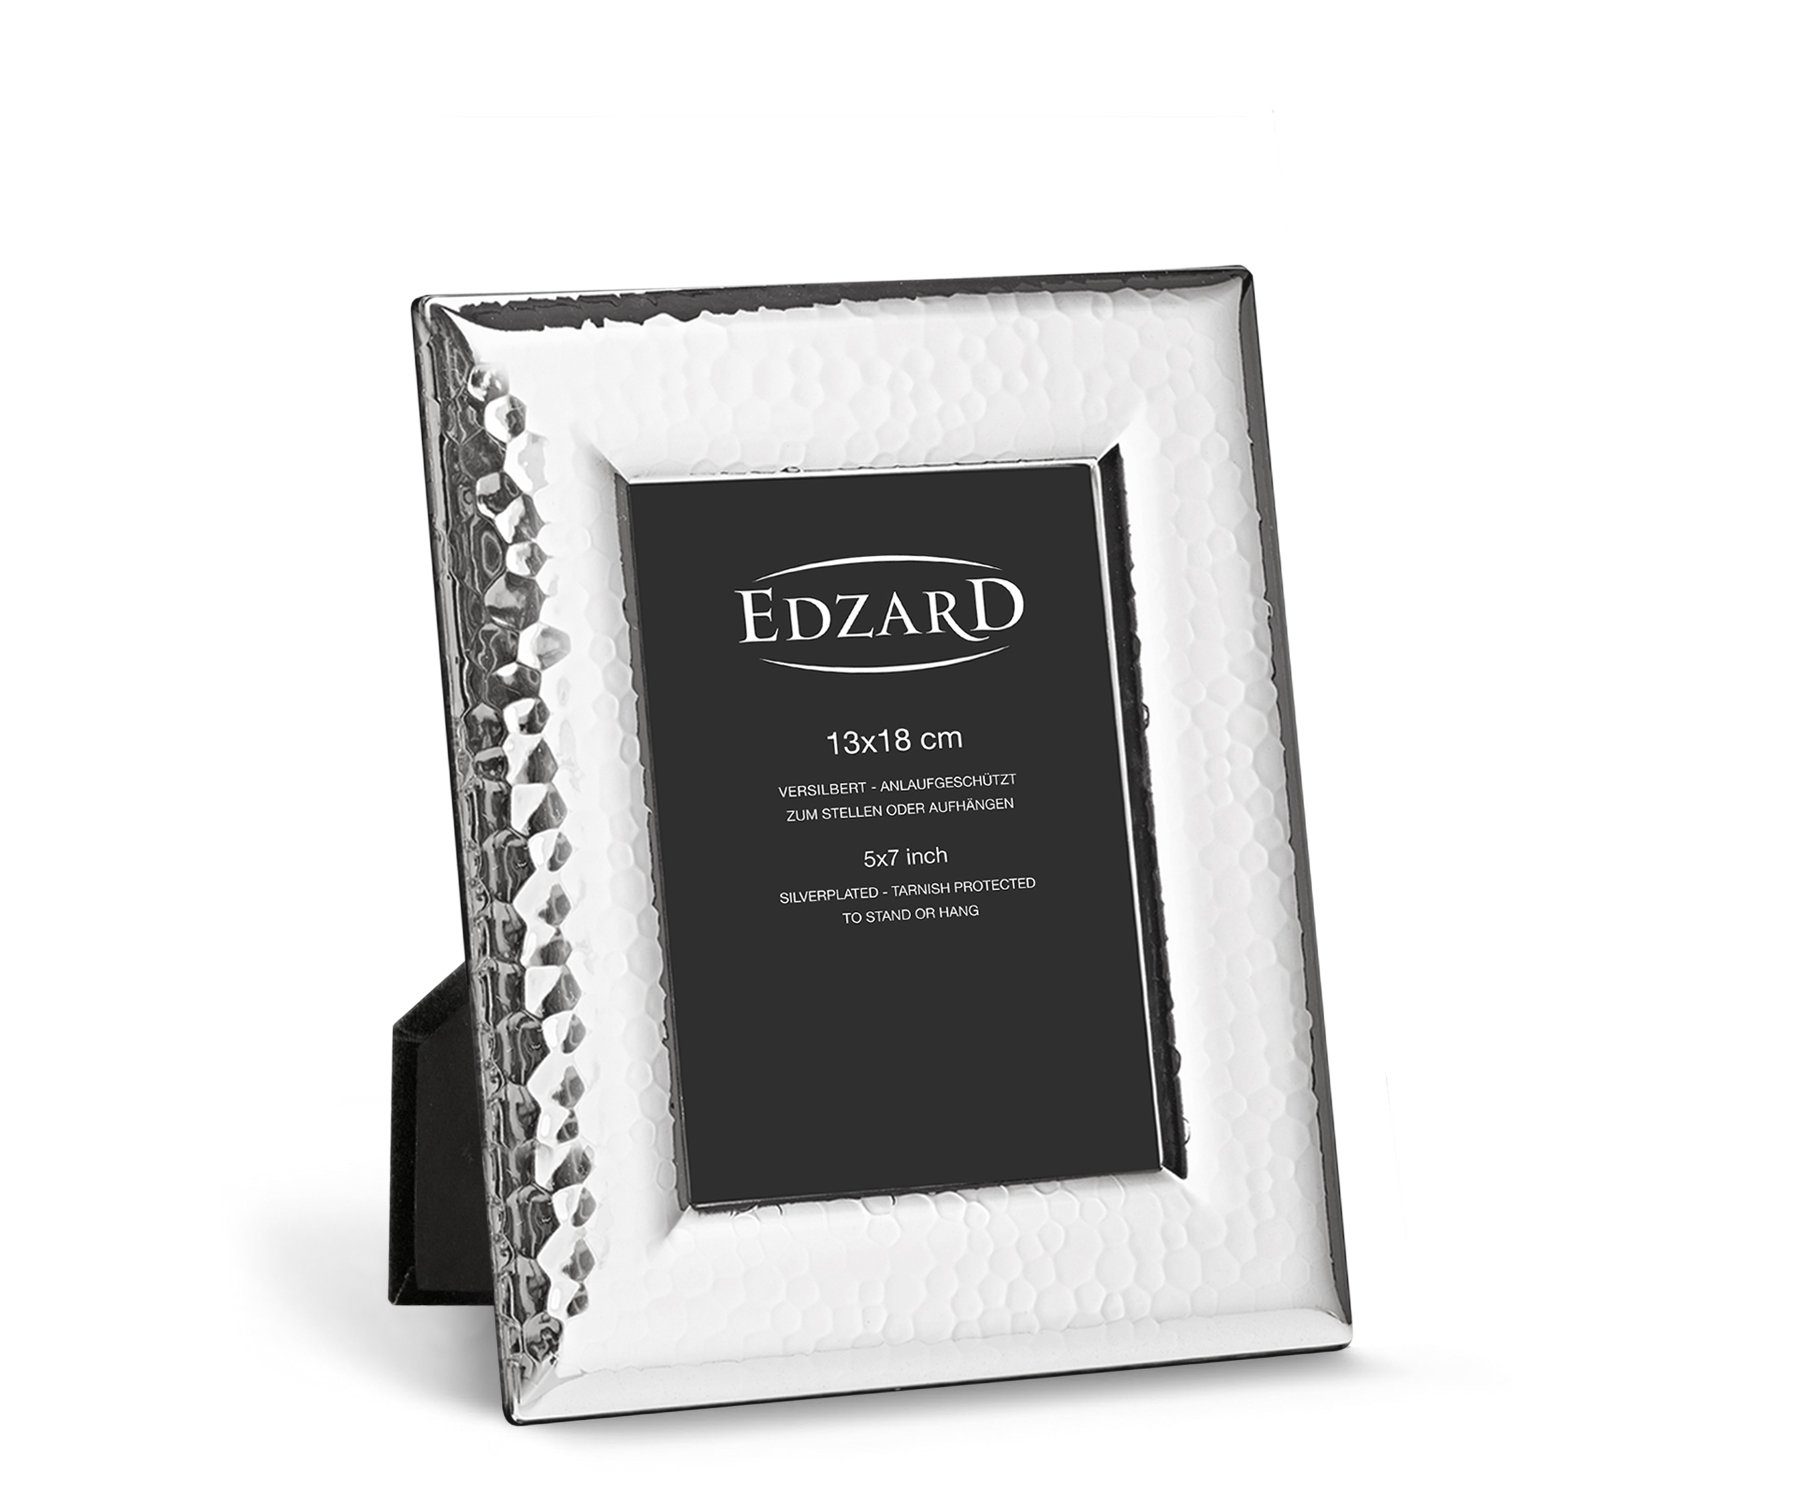 EDZARD Bilderrahmen Positano, versilbert und anlaufgeschützt, für 13x18 cm Foto